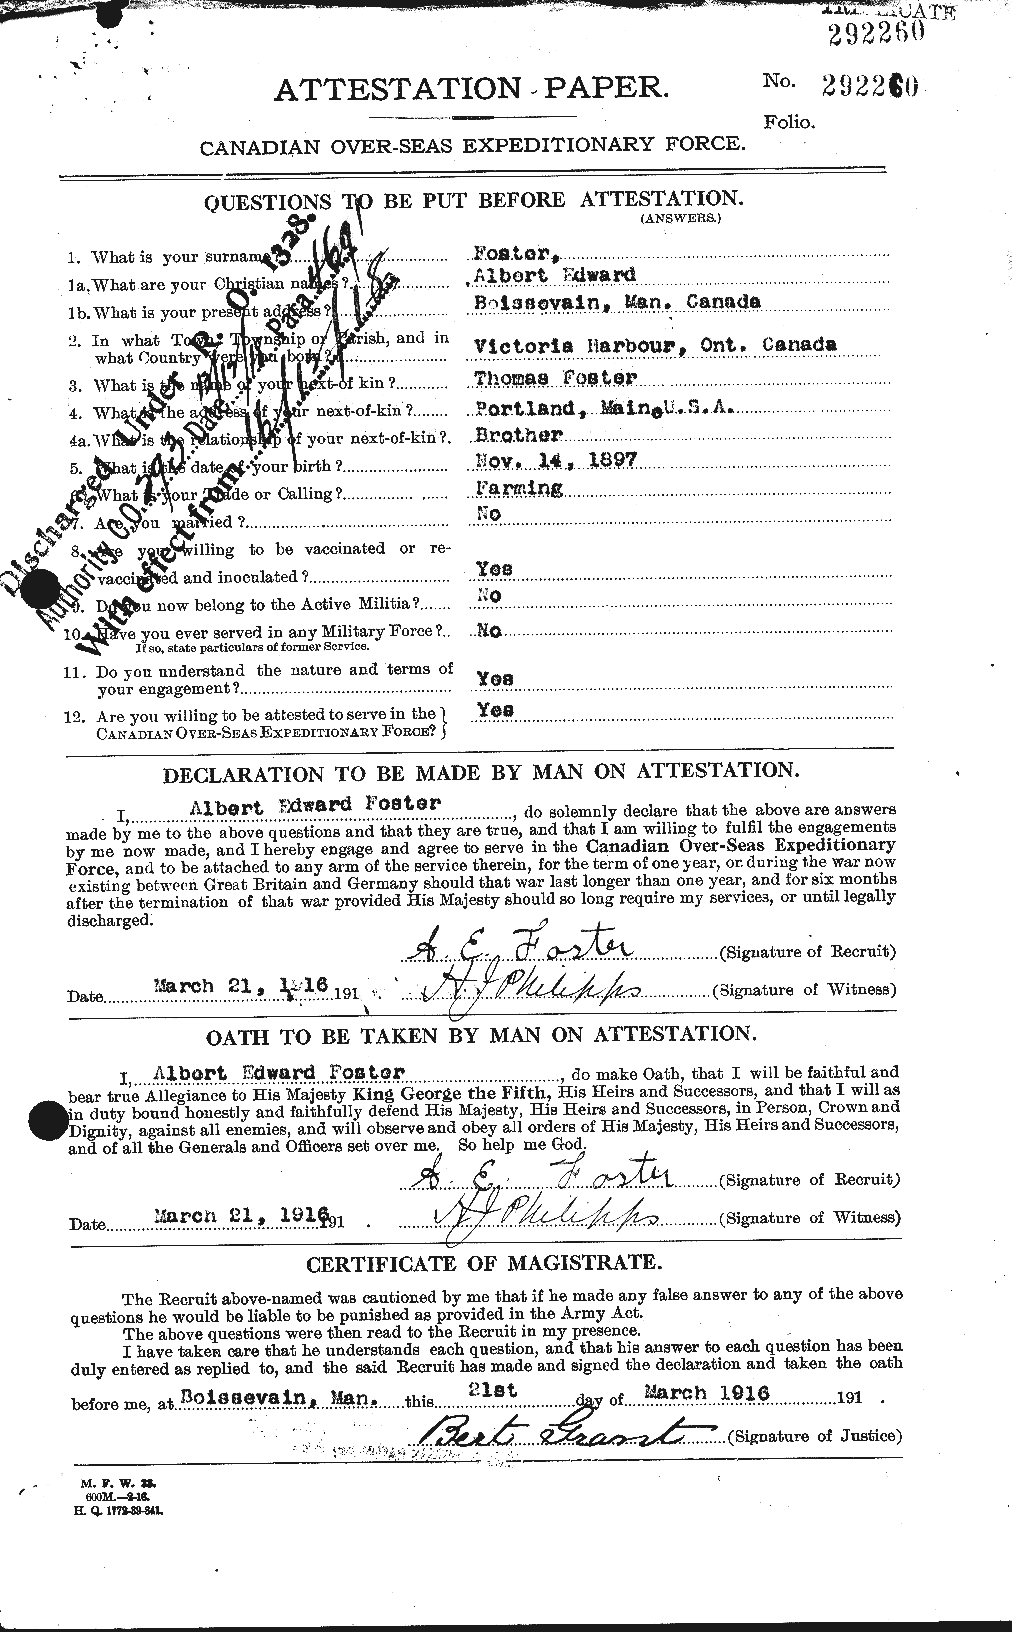 Dossiers du Personnel de la Première Guerre mondiale - CEC 330435a